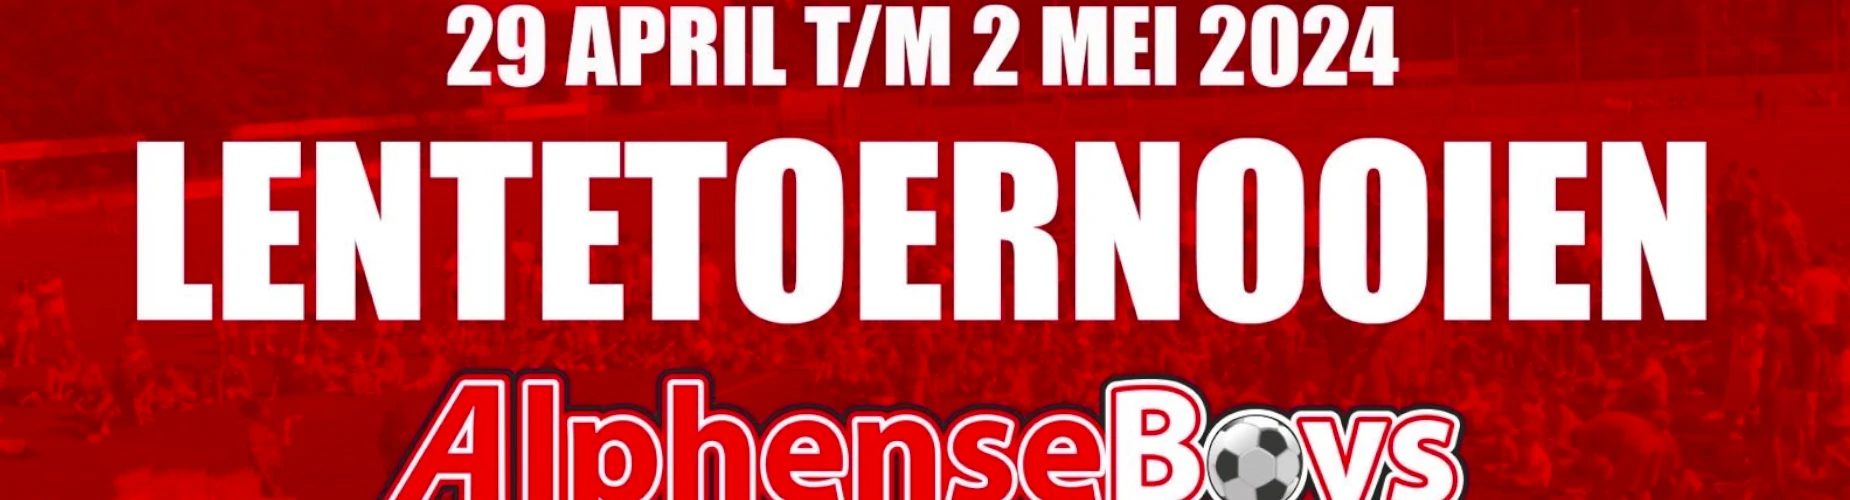 Banner - O9 - Lentetoernooi Alphense Boys - Alphense Boys - Alphen aan den Rijn